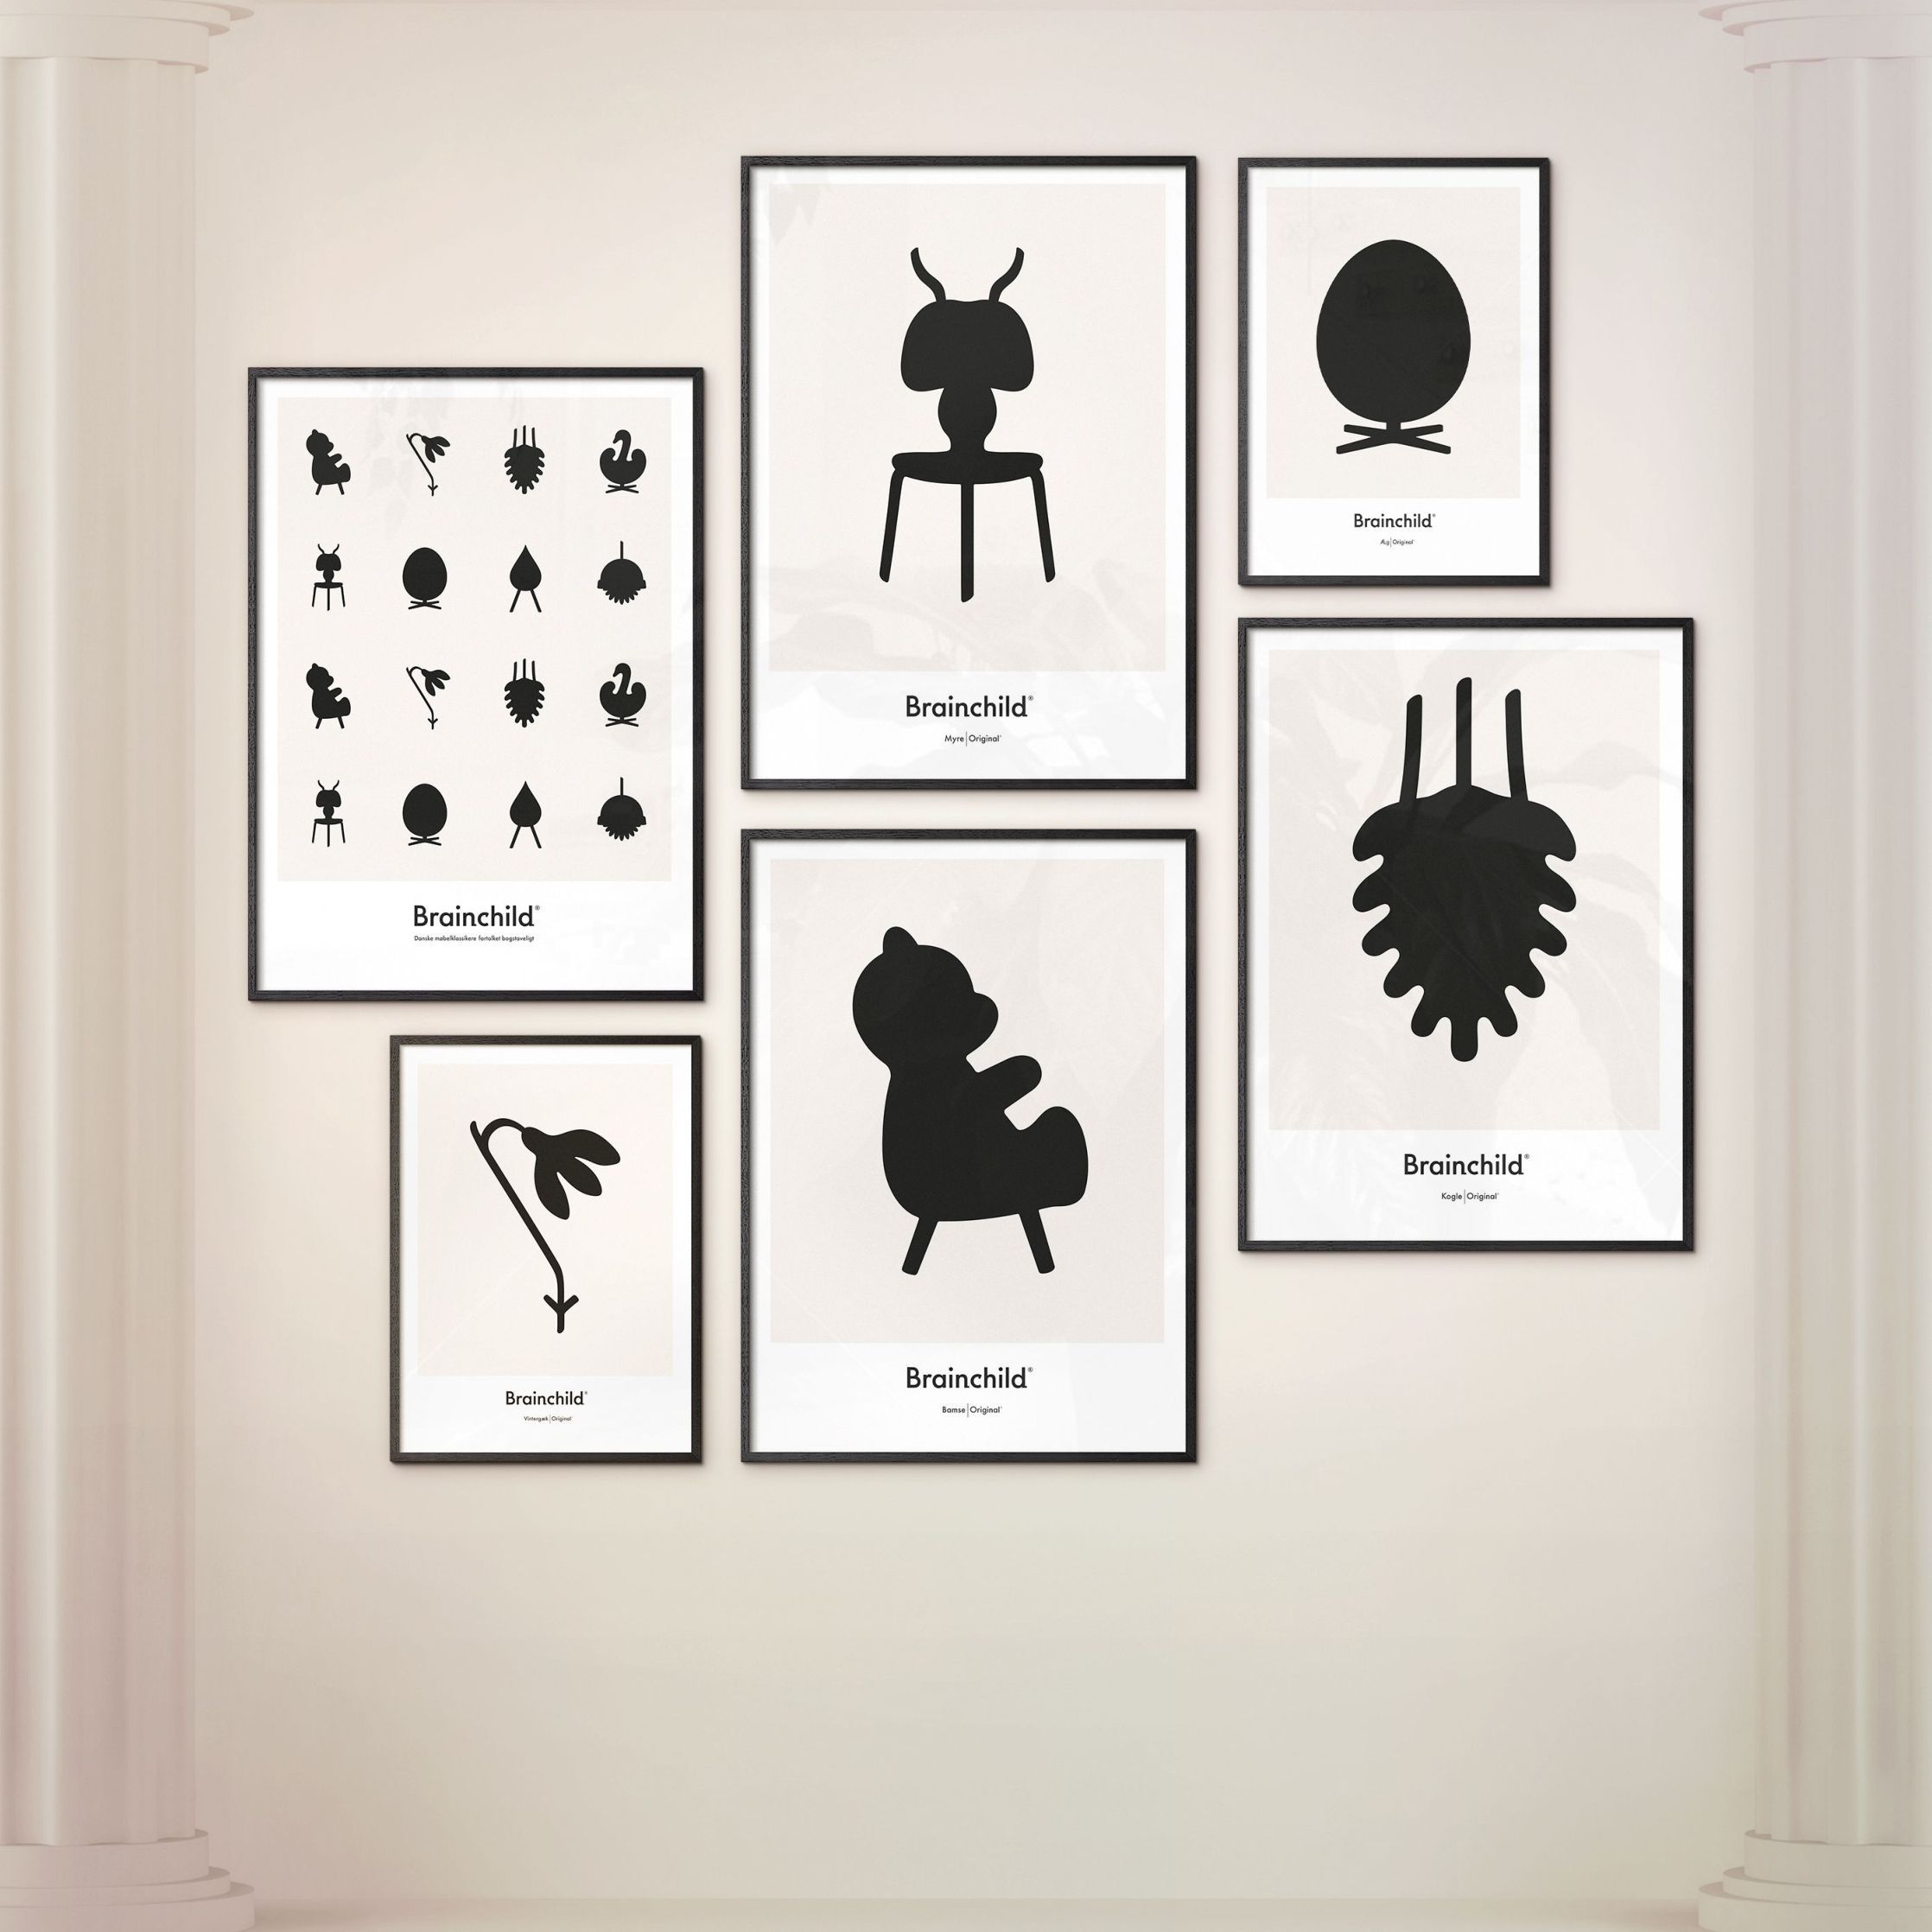 Brainchild Affiche d'icône de conception de fourmi, cadre en bois foncé 50x70 cm, gris